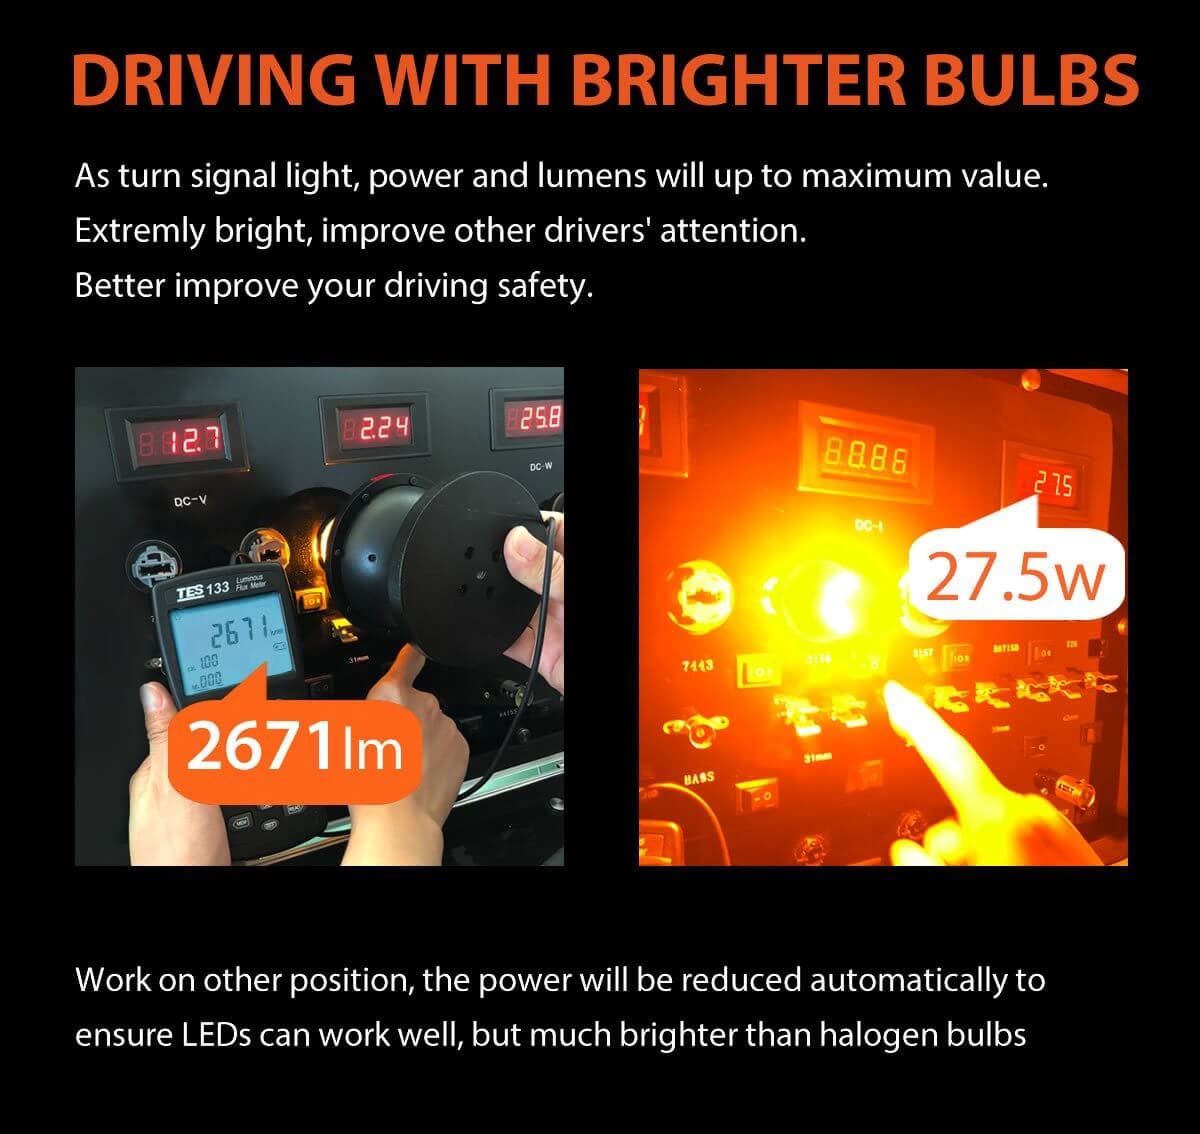 BAU15S PY21W CANBUS Anti Hyper Flash LED Turn Signal Lights